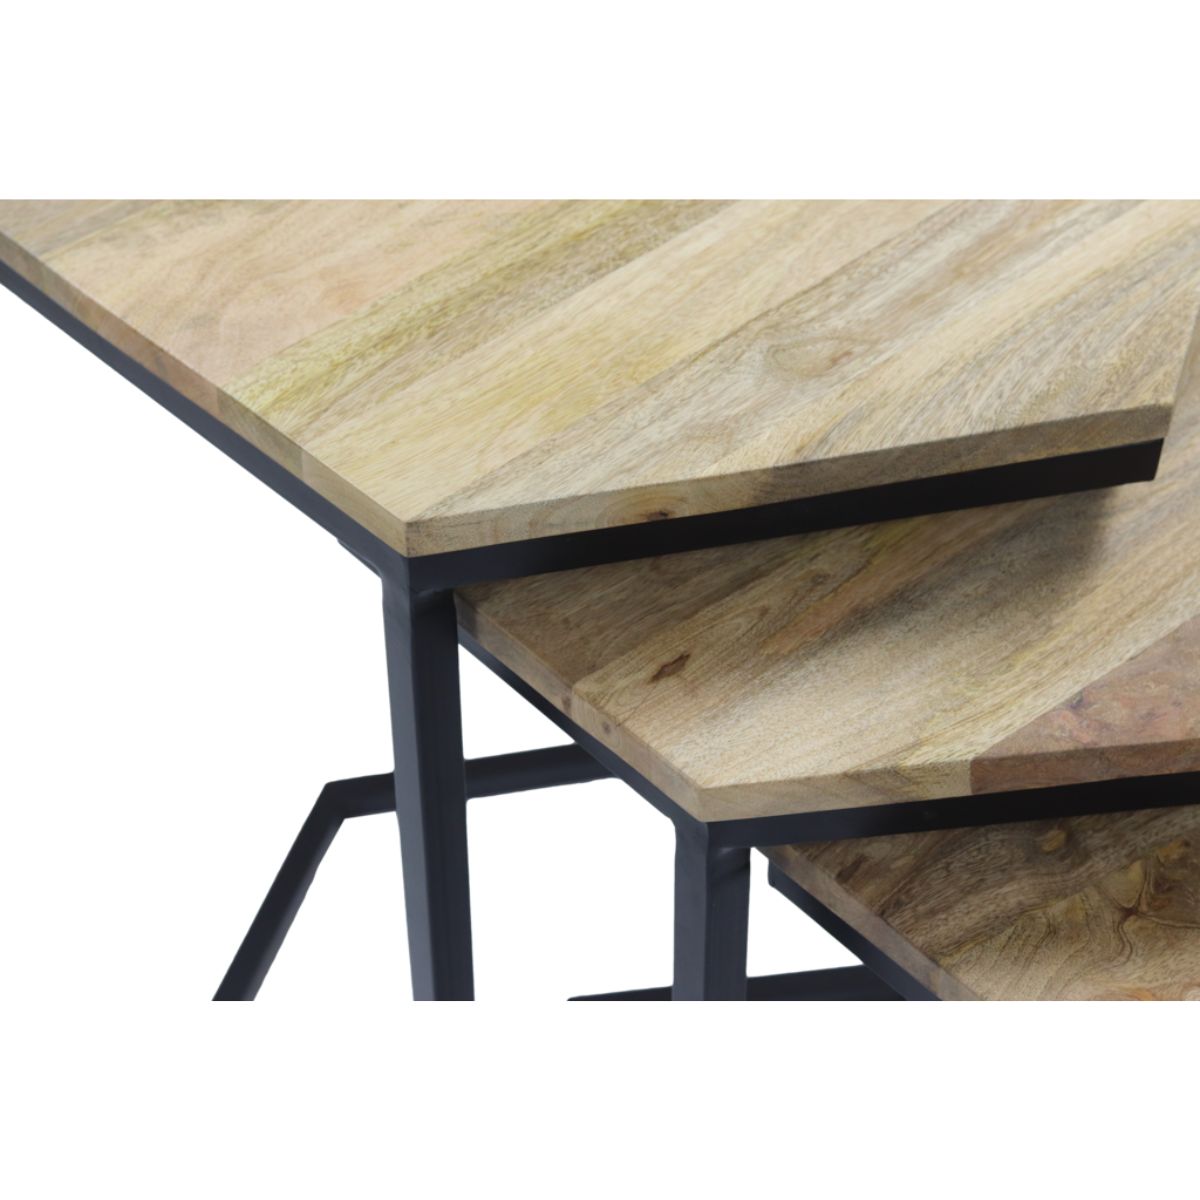 Set van 3 Woonkamertafels: Breng een vernieuwende look naar je interieur met deze veelzijdige tafels.